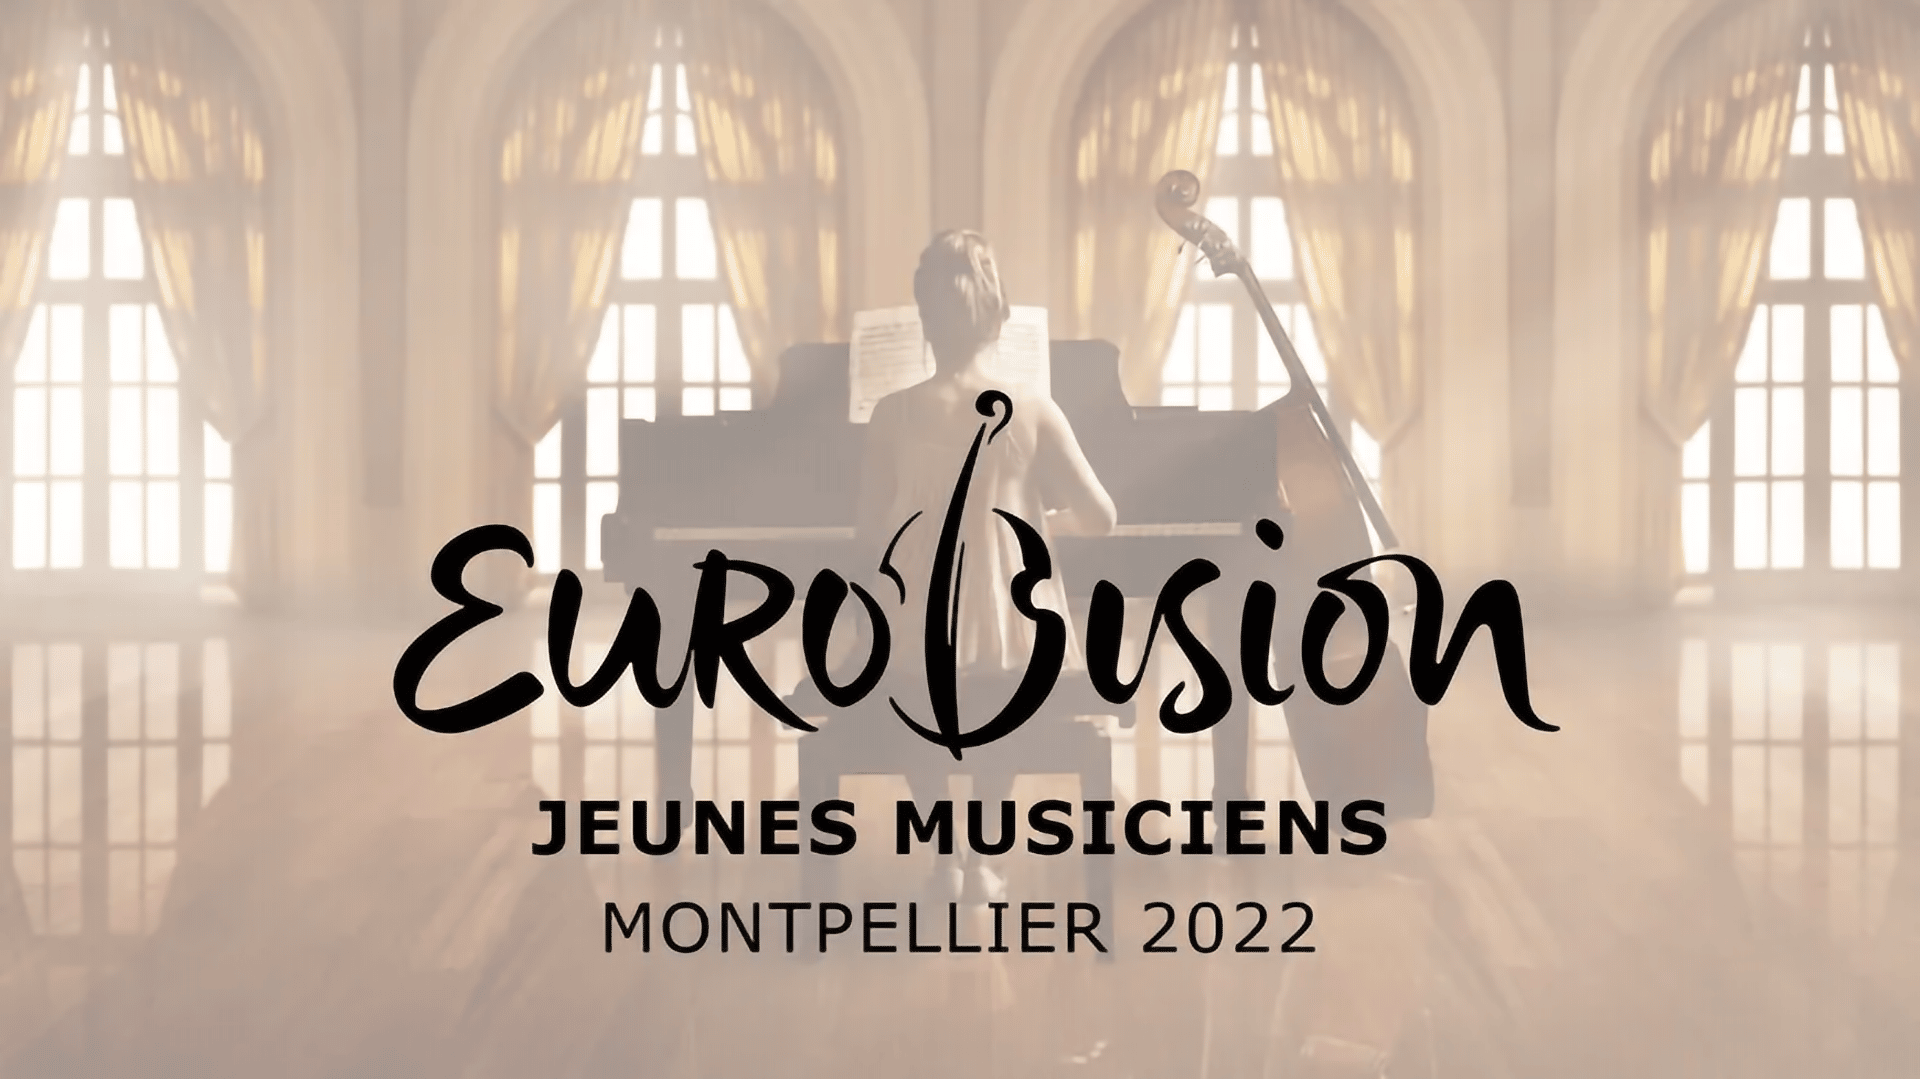 A Fiatal Zenészek Eurovíziója 2022 promóciós grafikája a Le Festival.eu oldalán